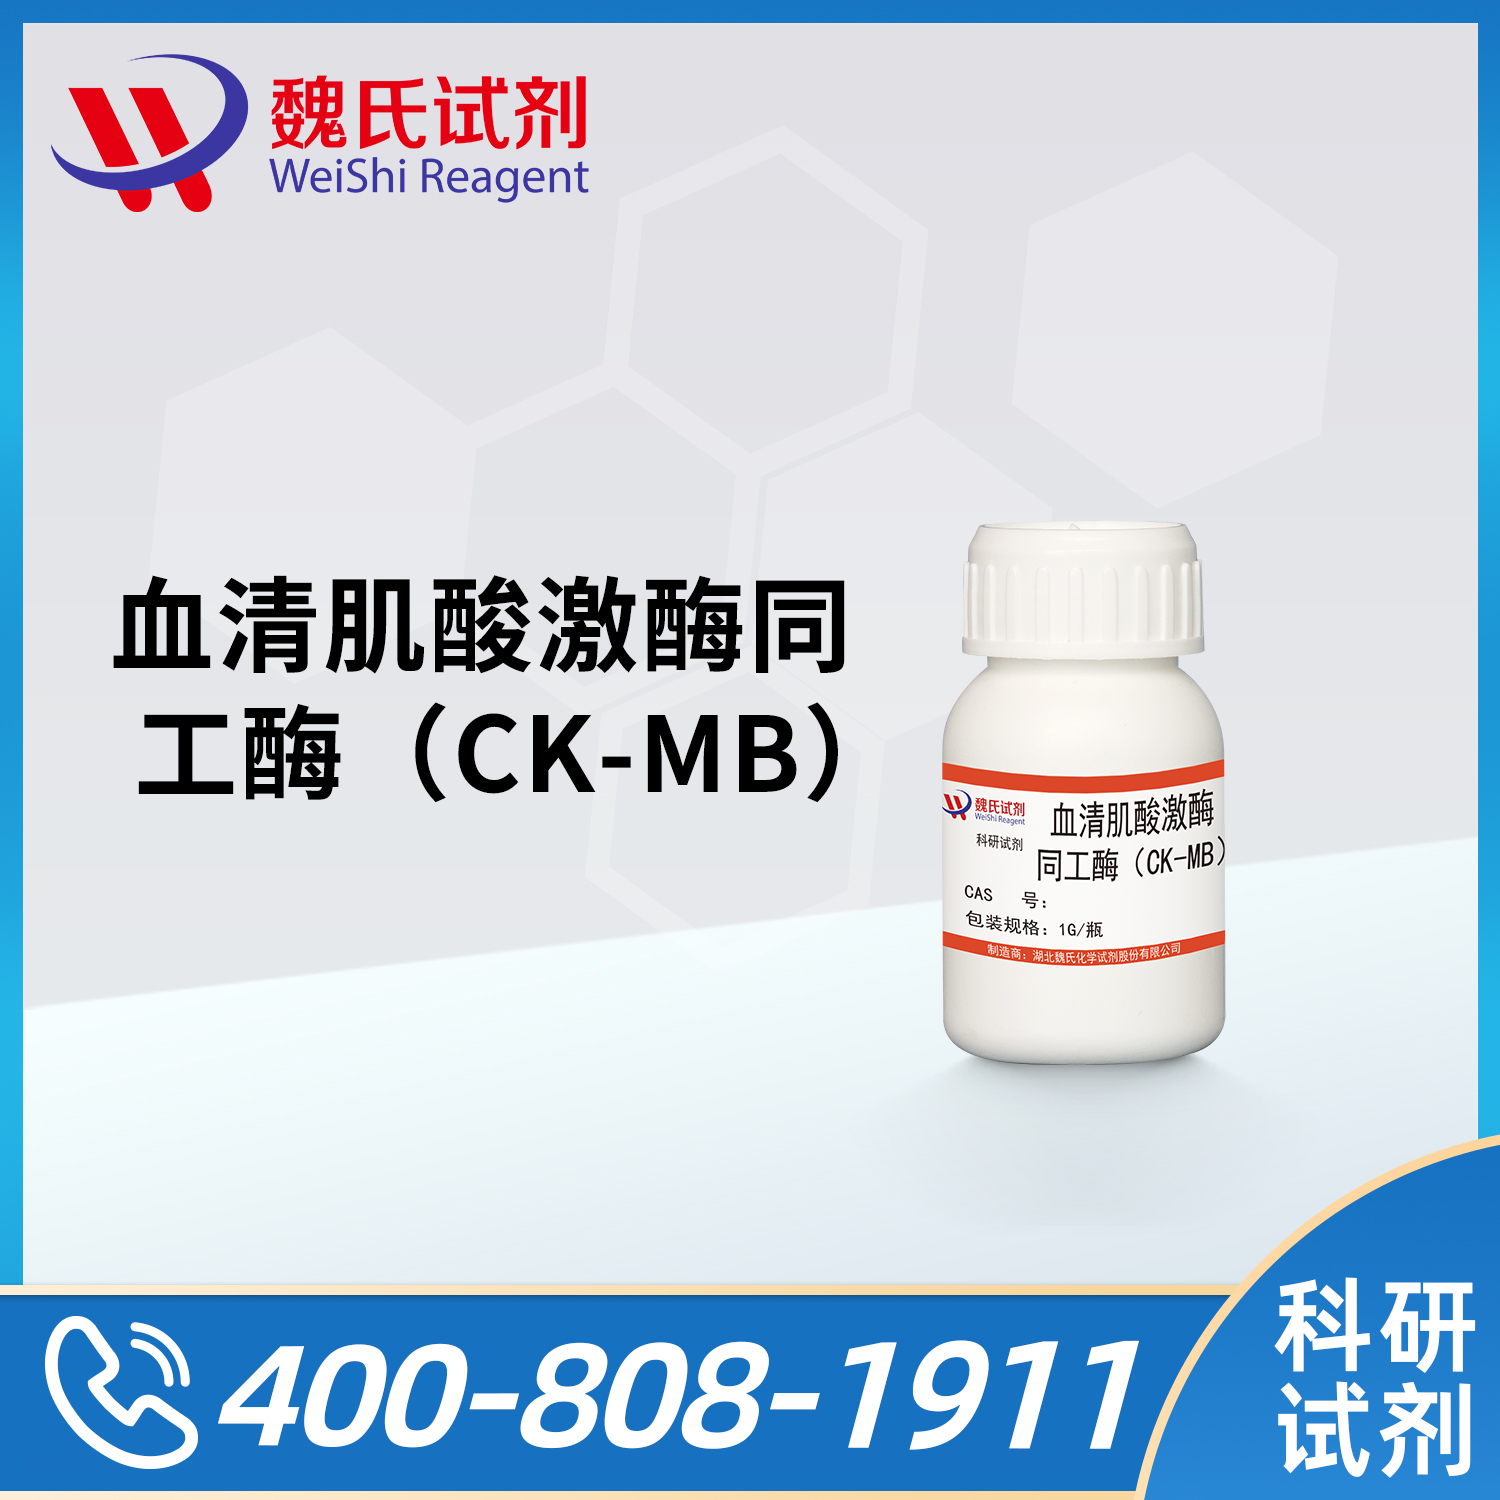 血清肌酸激酶同工酶（CK-MB）